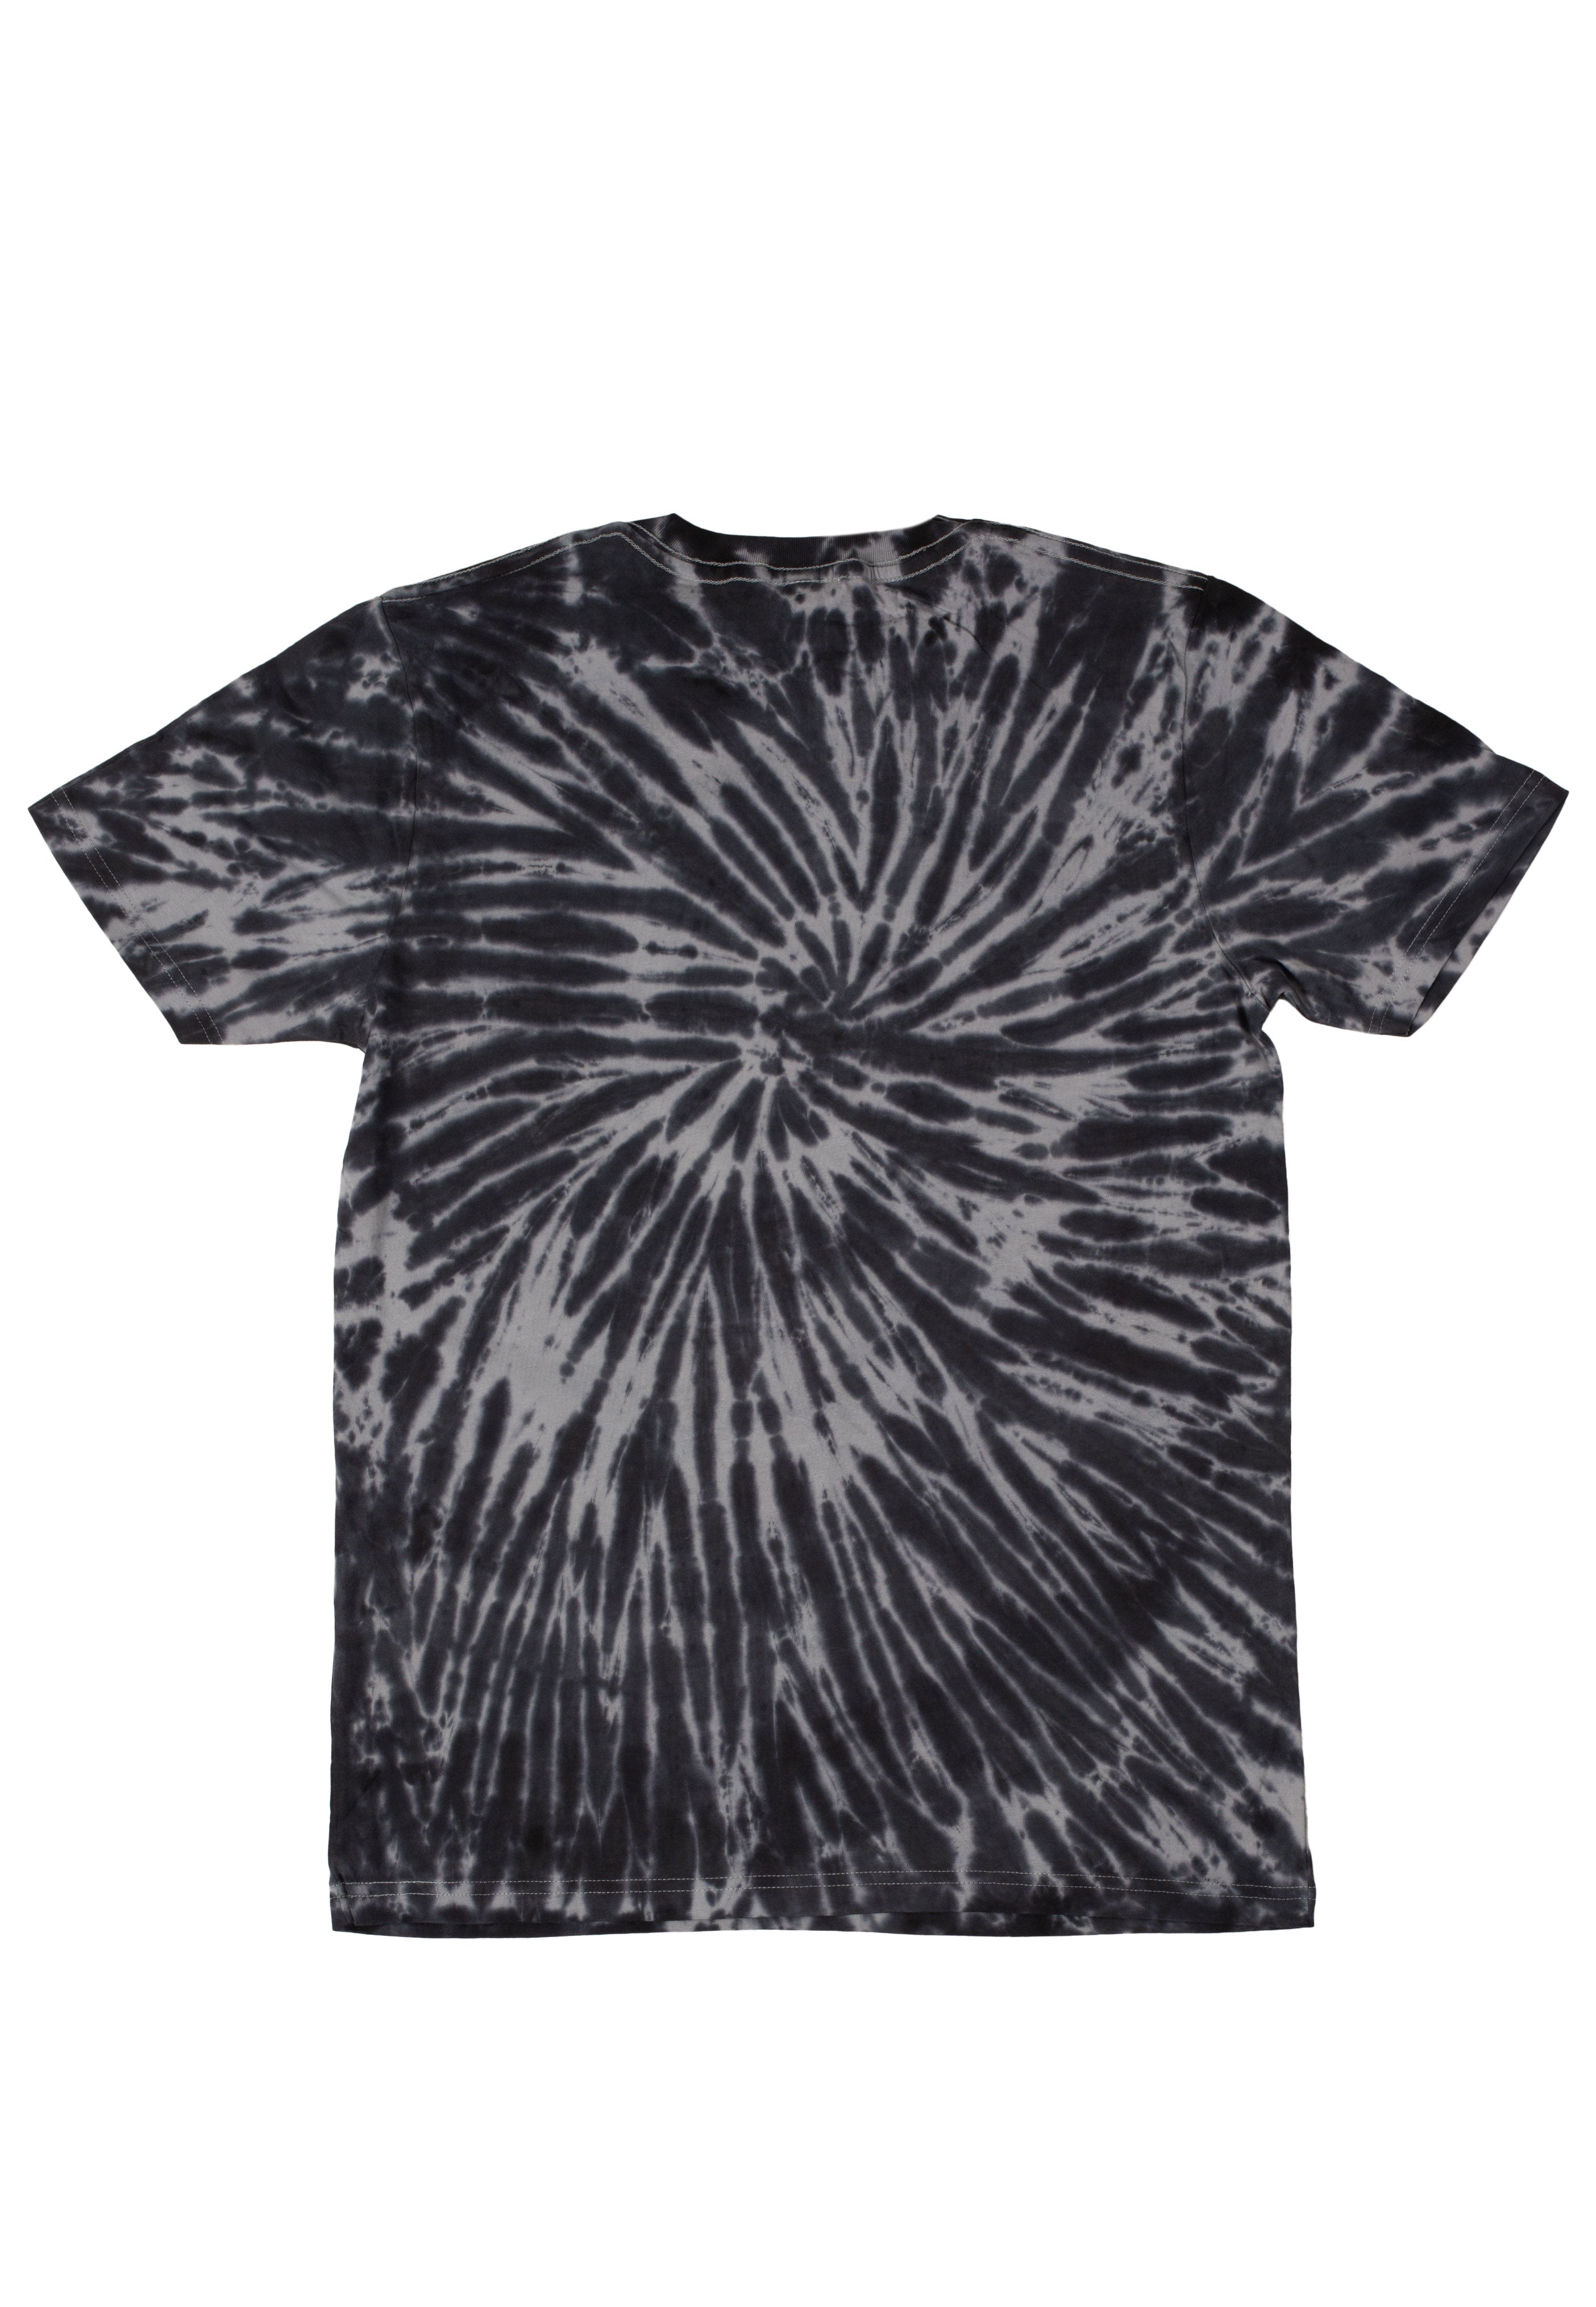 Lionheart - Arched LHHC Tie Dye - T-Shirt